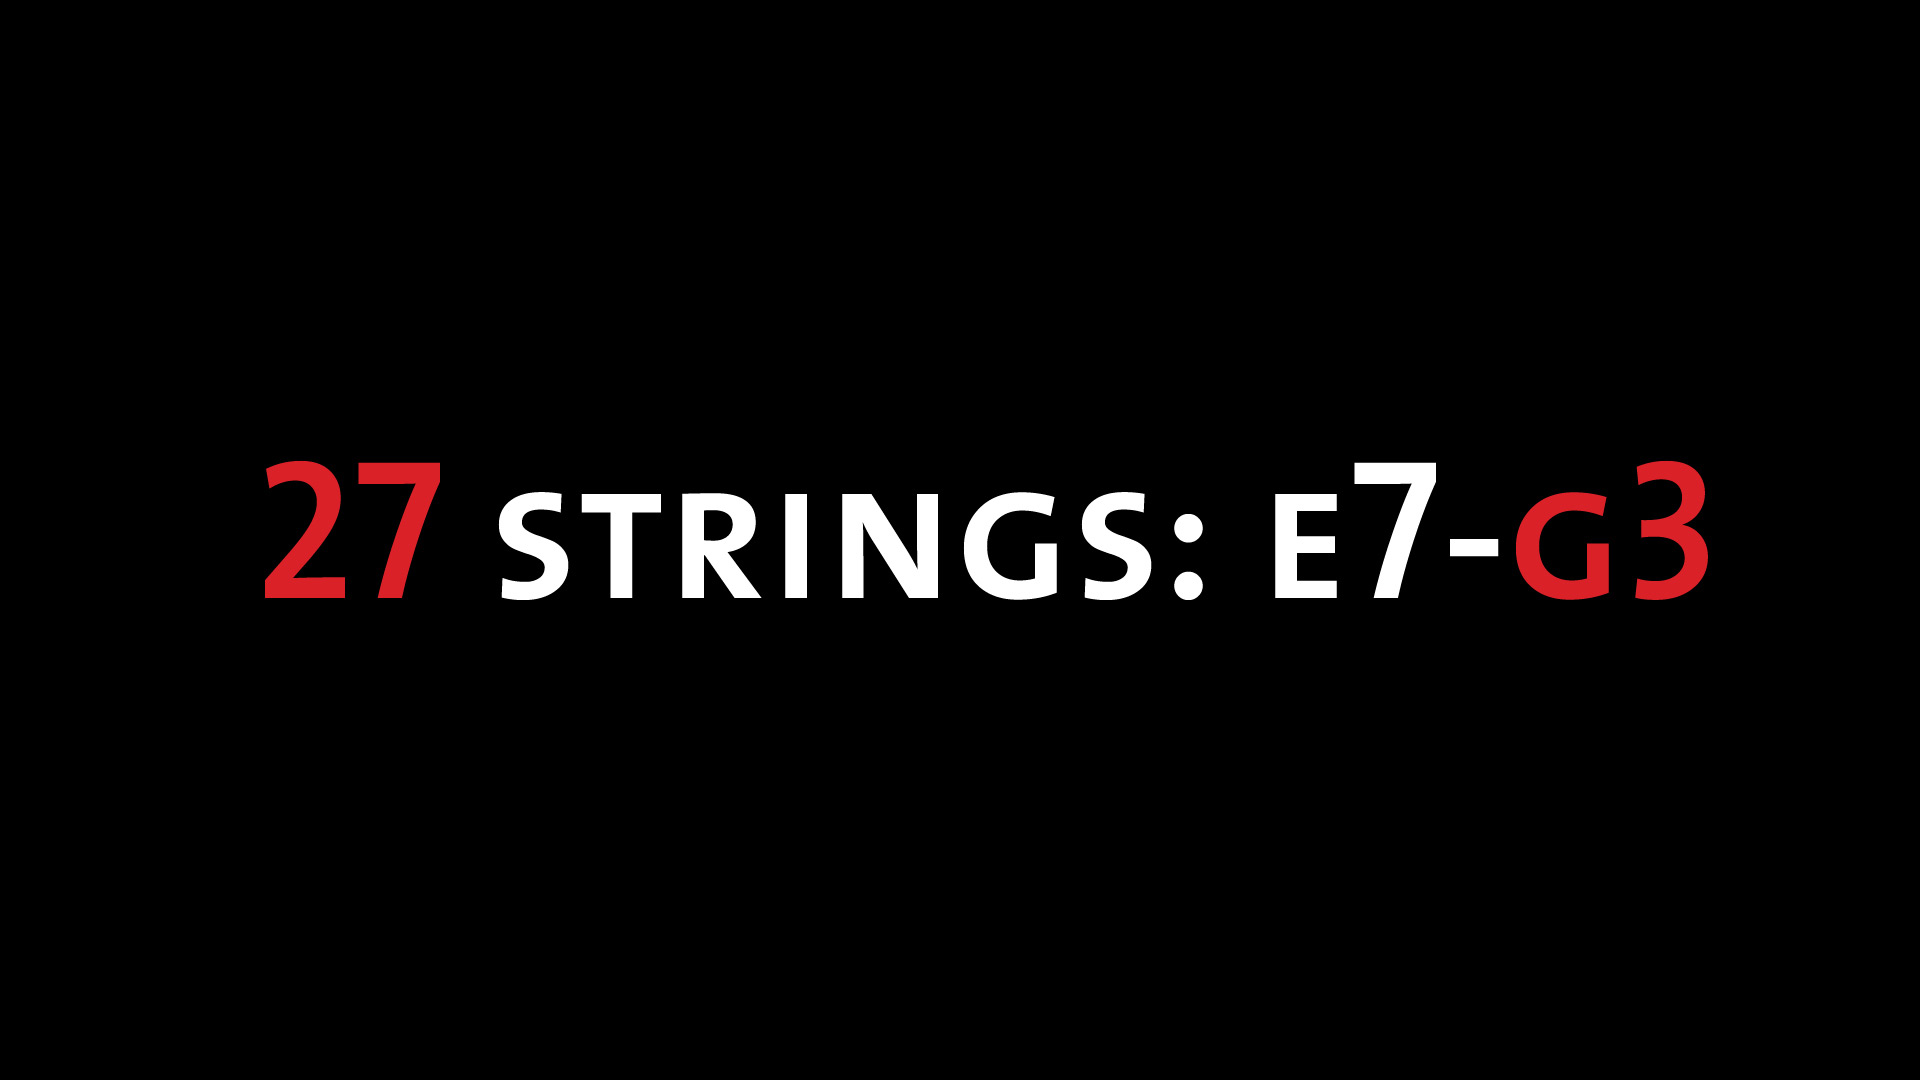 27 strings: E7-G3